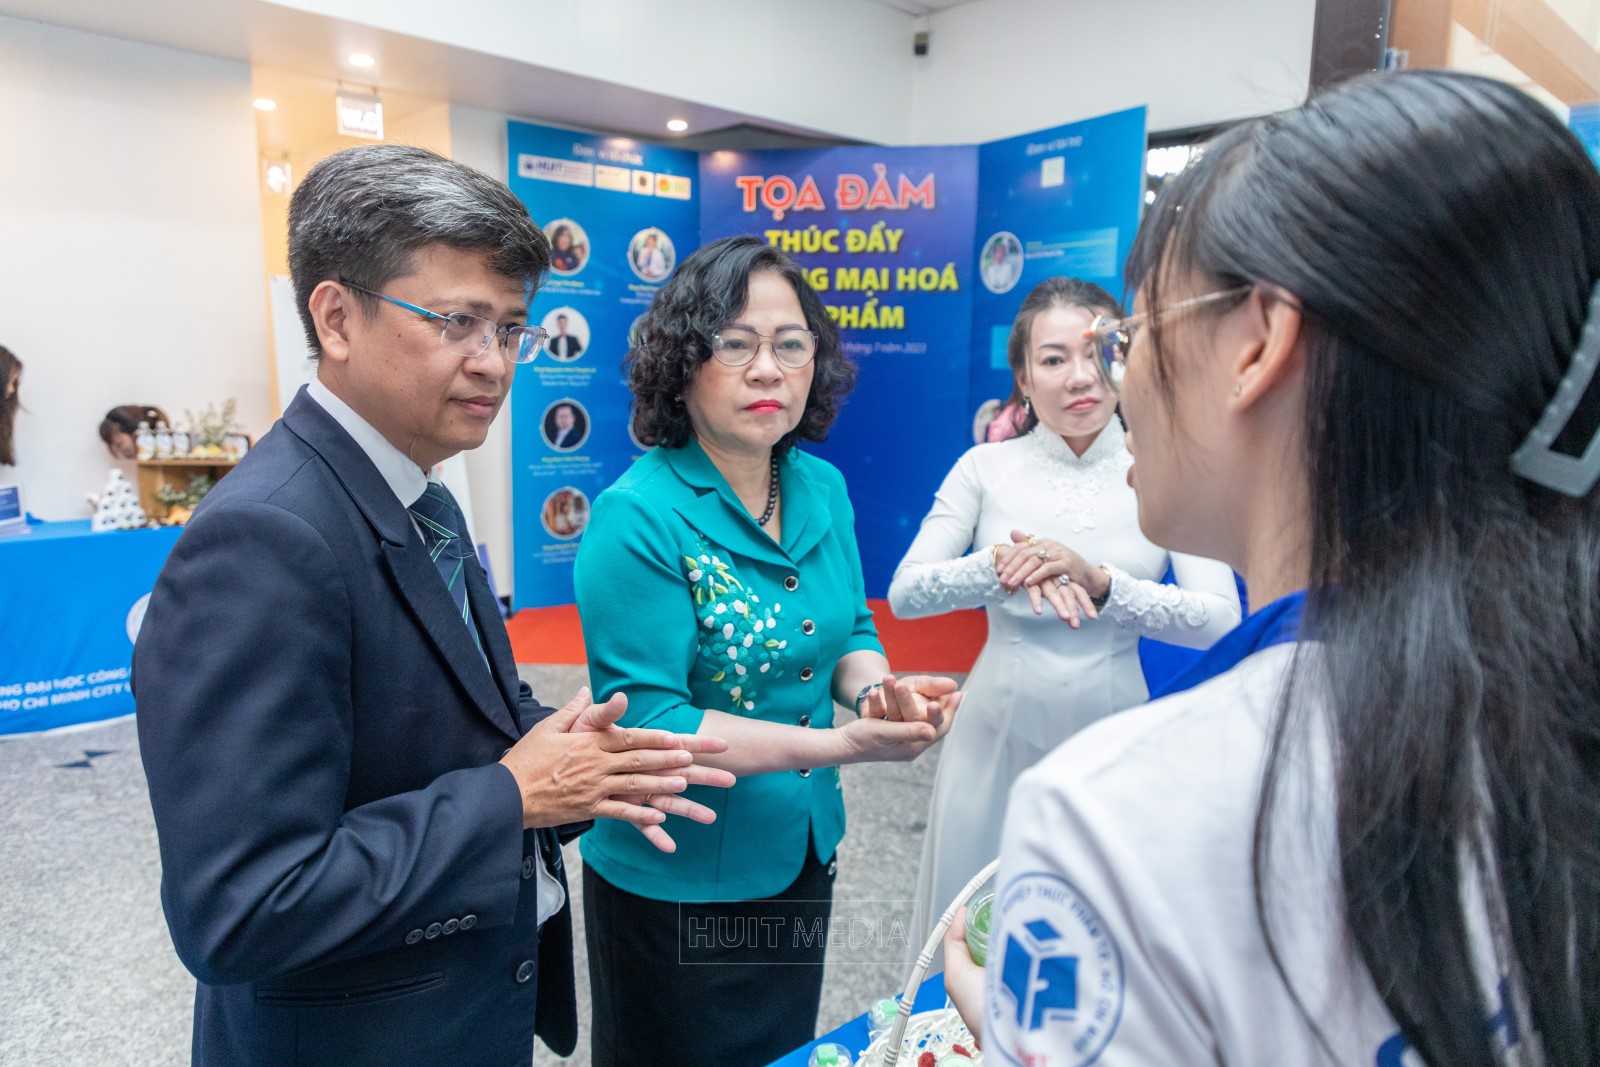 Thứ trưởng Bộ Giáo dục và Đào tạo Ngô Thị Minh tham dự Tọa đàm Thương mại hóa sản phẩm tại trường Đại học Công Thương TP.HCM